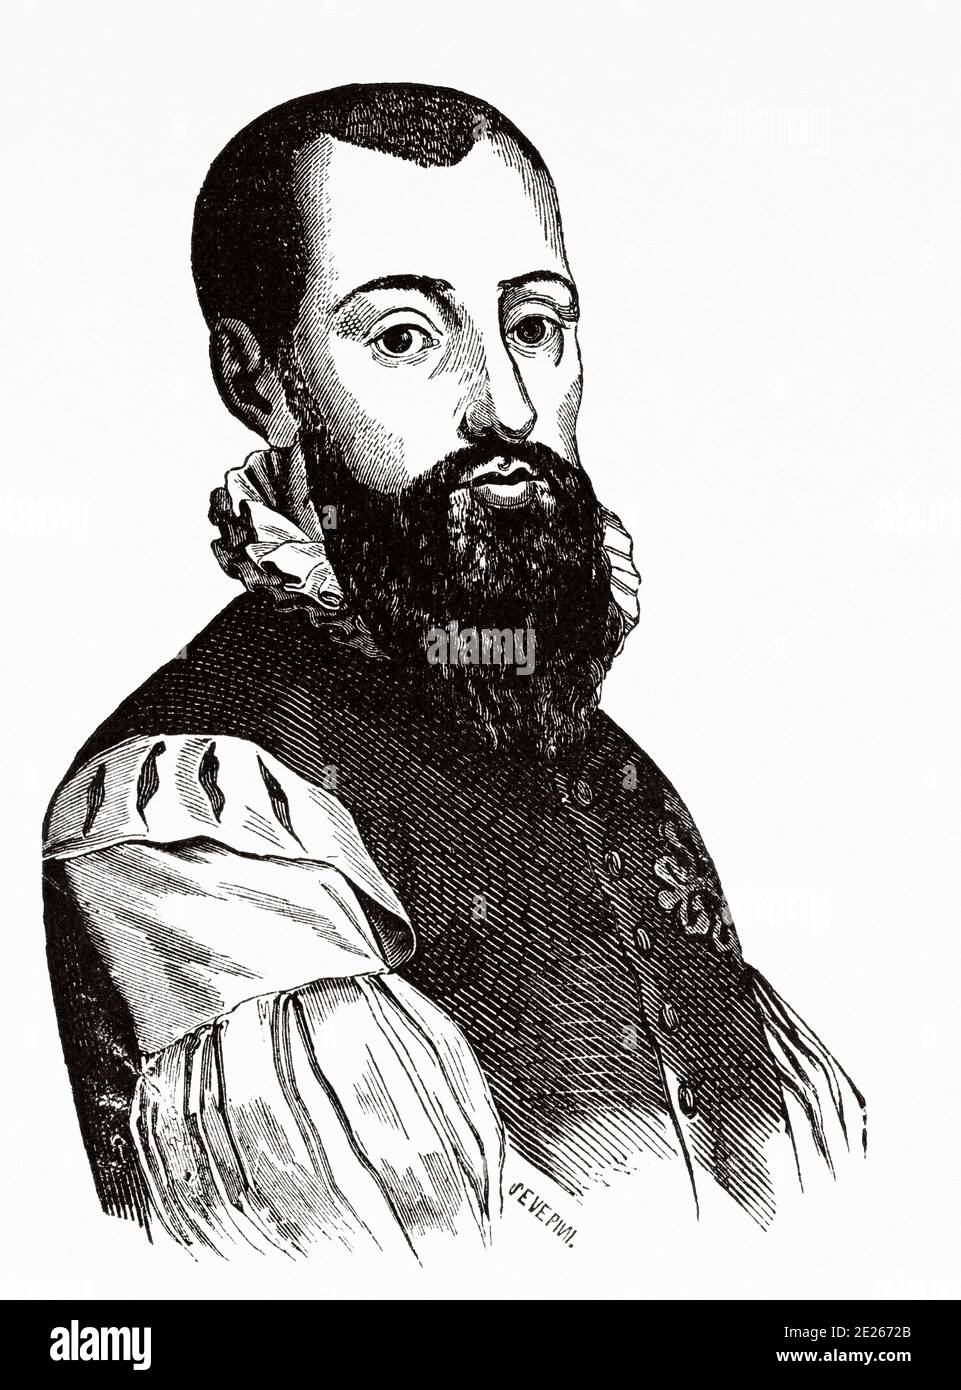 Portrait de Garci Lasso de la Vega (Tolède 1498 - Nice 1536), mieux connu sous le nom de Garcilaso de la Vega, était un poète et soldat espagnol de l'âge d'or. Ancienne gravure du livre Spanish Biographical Year par Ildefonso Fernandez 1899 Banque D'Images